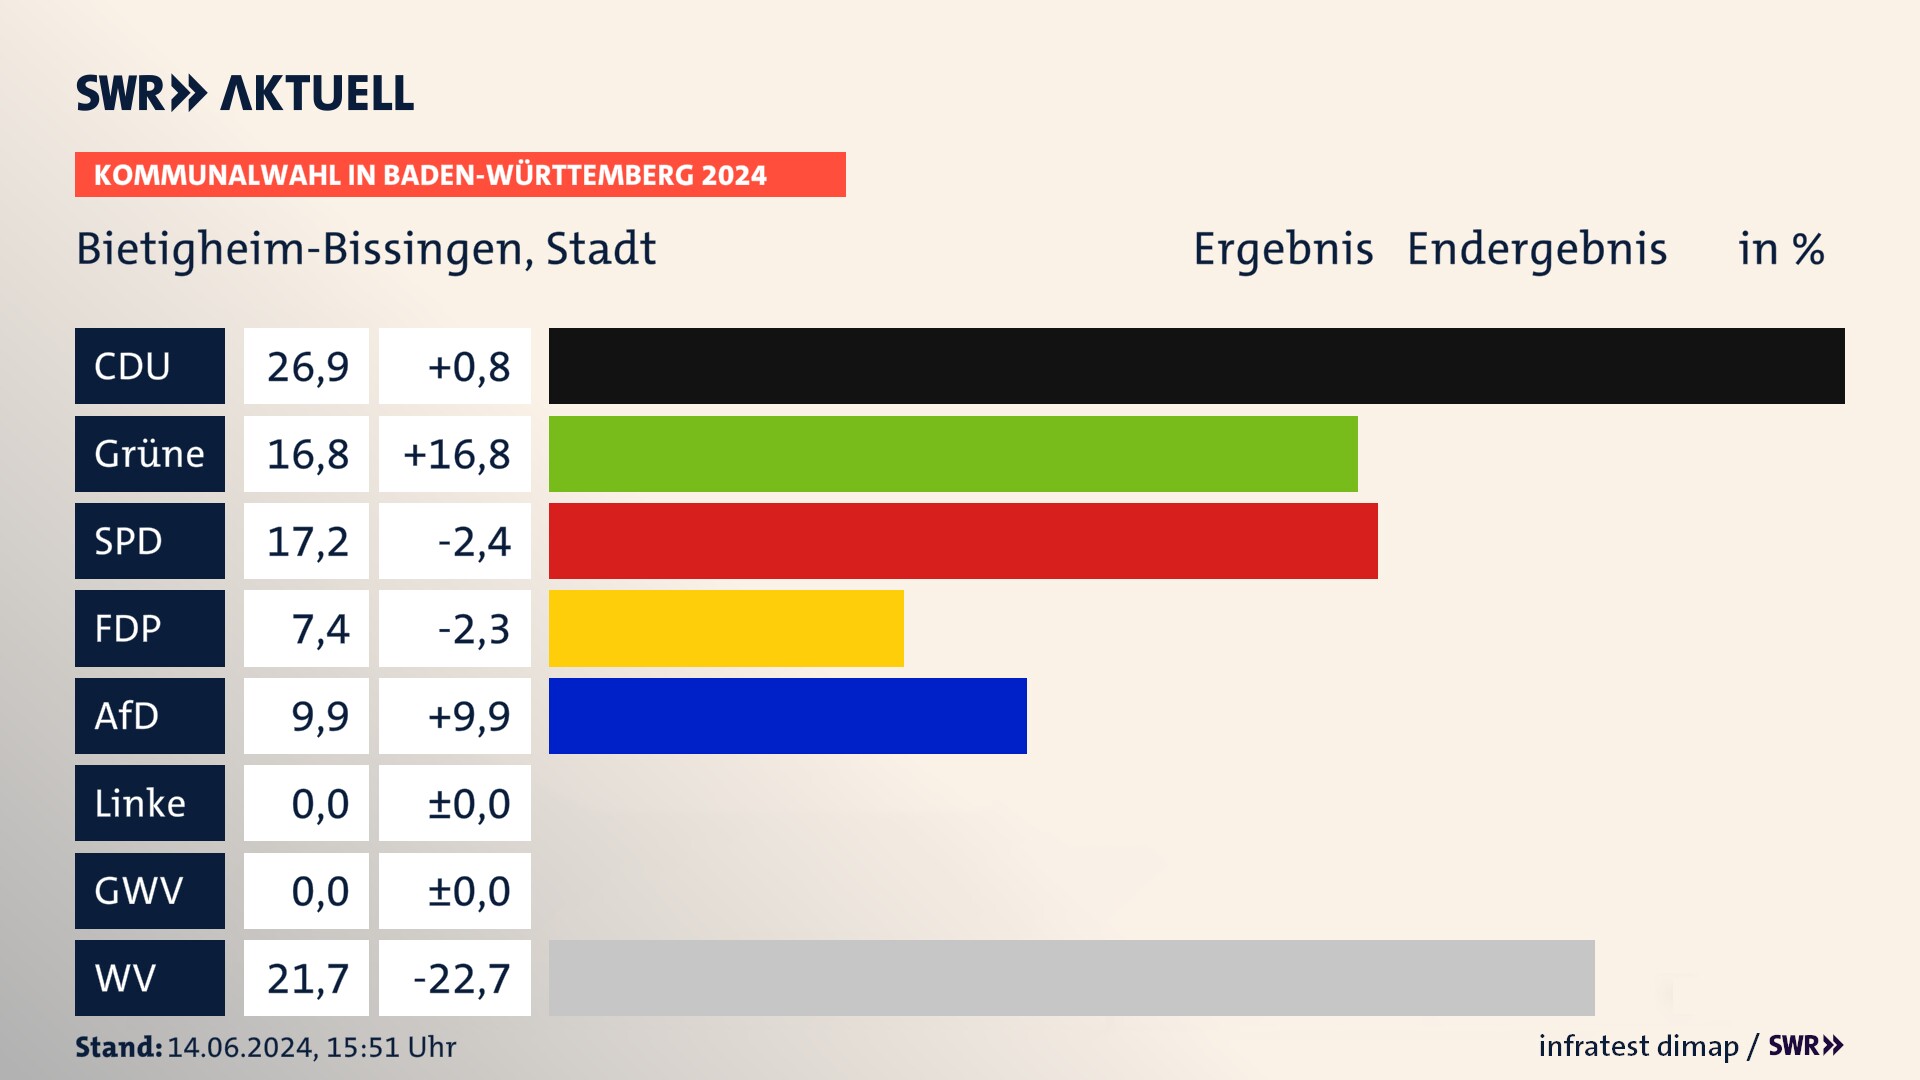 Kommunalwahl 2024 Endergebnis Zweitstimme für Bietigheim-Bissingen. In Bietigheim-Bissingen, Stadt erzielt die CDU 26,9 Prozent der gültigen  Stimmen. Die Grünen landen bei 16,8 Prozent. Die SPD erreicht 17,2 Prozent. Die FDP kommt auf 7,4 Prozent. Die AfD landet bei 9,9 Prozent. Die Wählervereinigungen erreichen 21,7 Prozent.